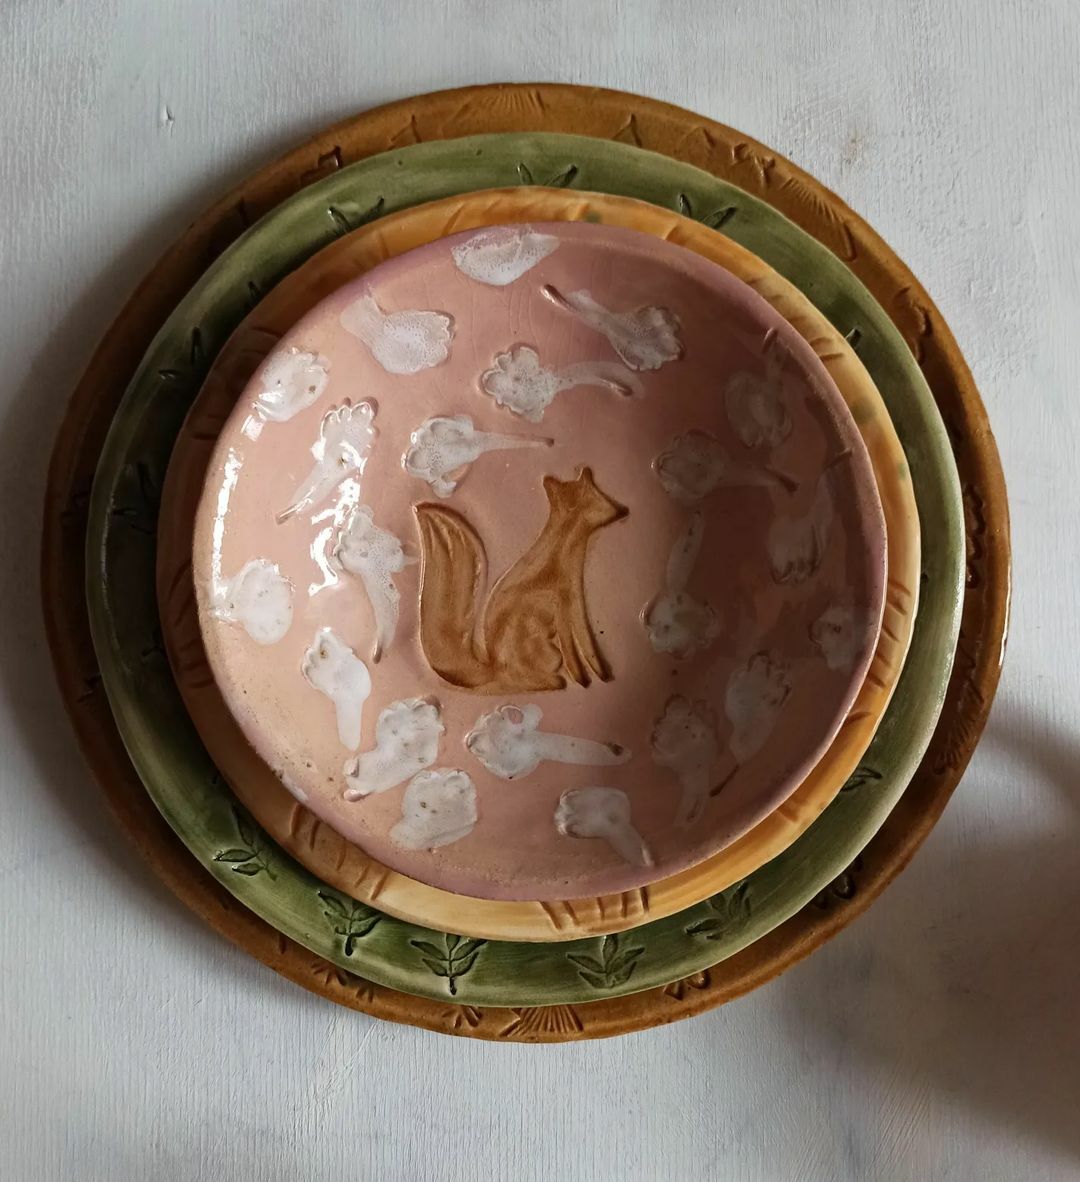 тарелки из керамики нежных оттенков